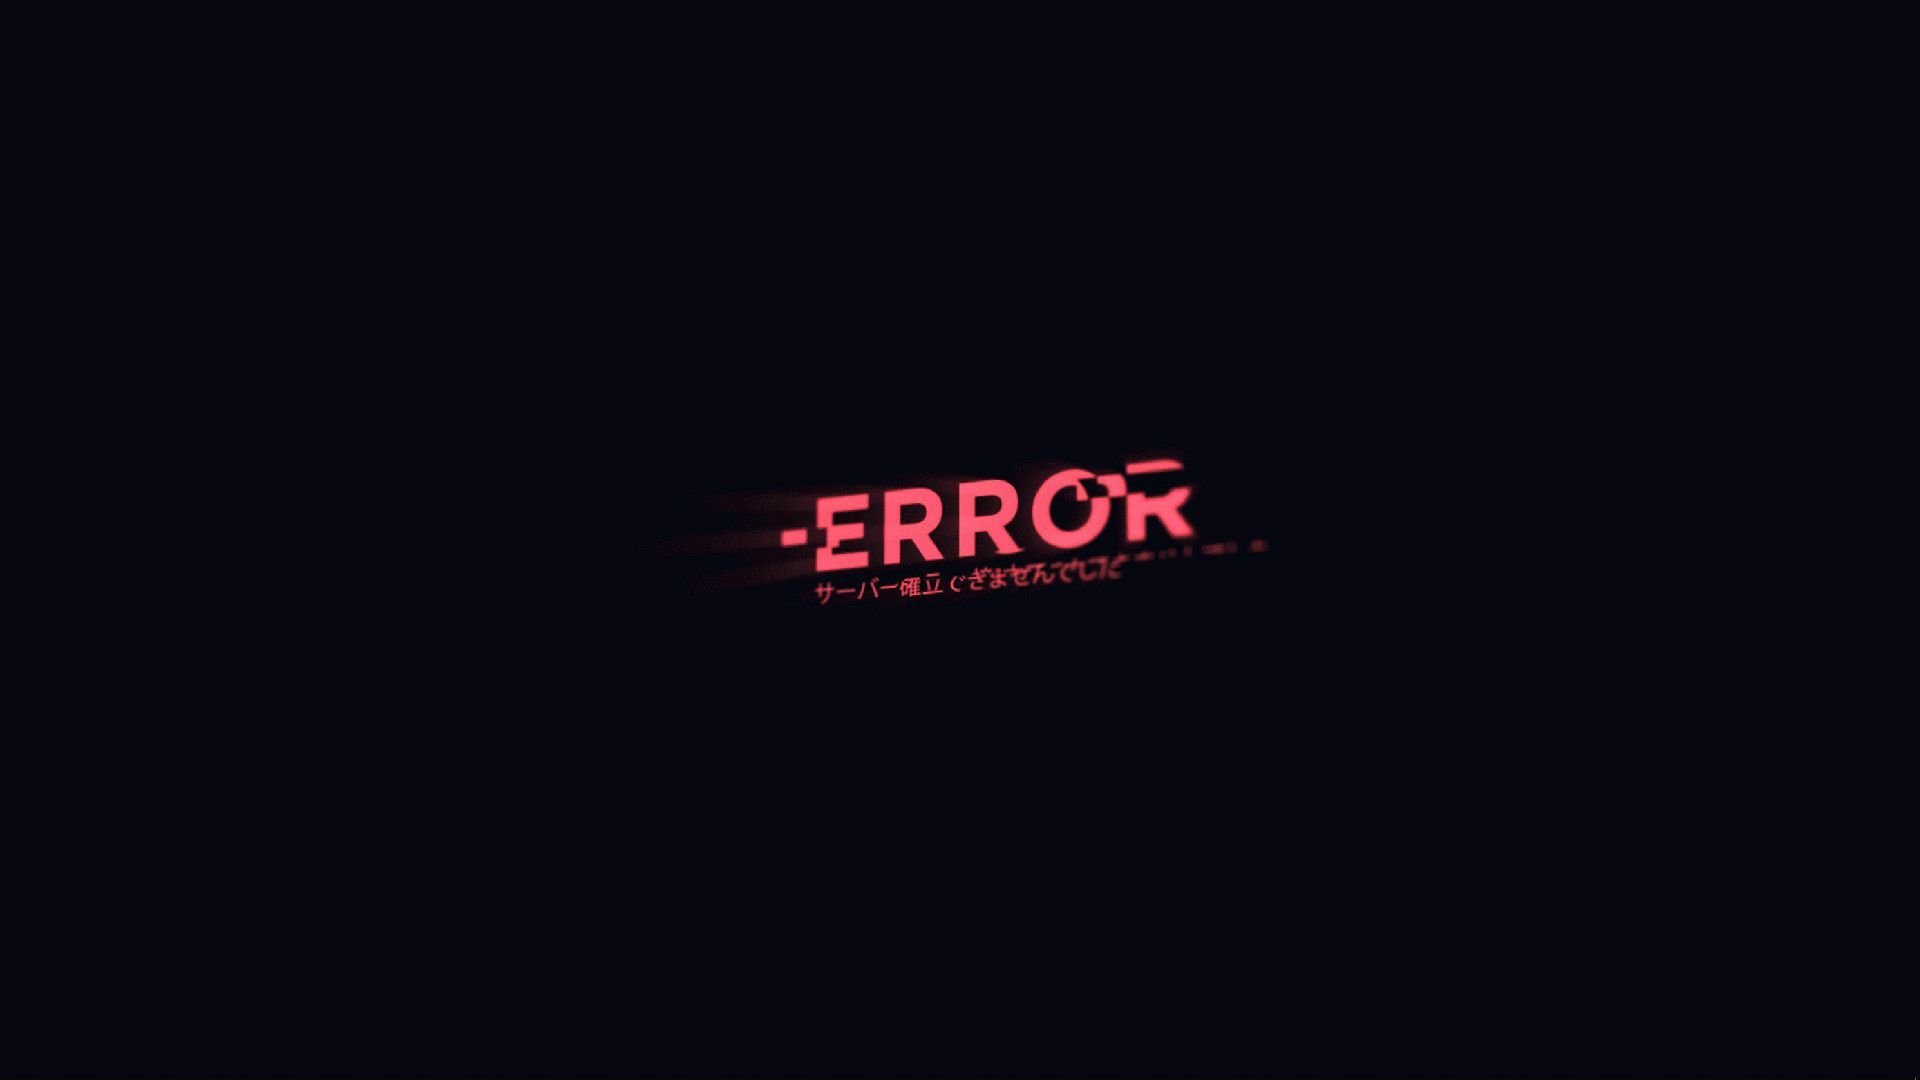 Error fora. Надписи на черном фоне. Error на черном фоне. Черный экран с надписью. Обои Error.